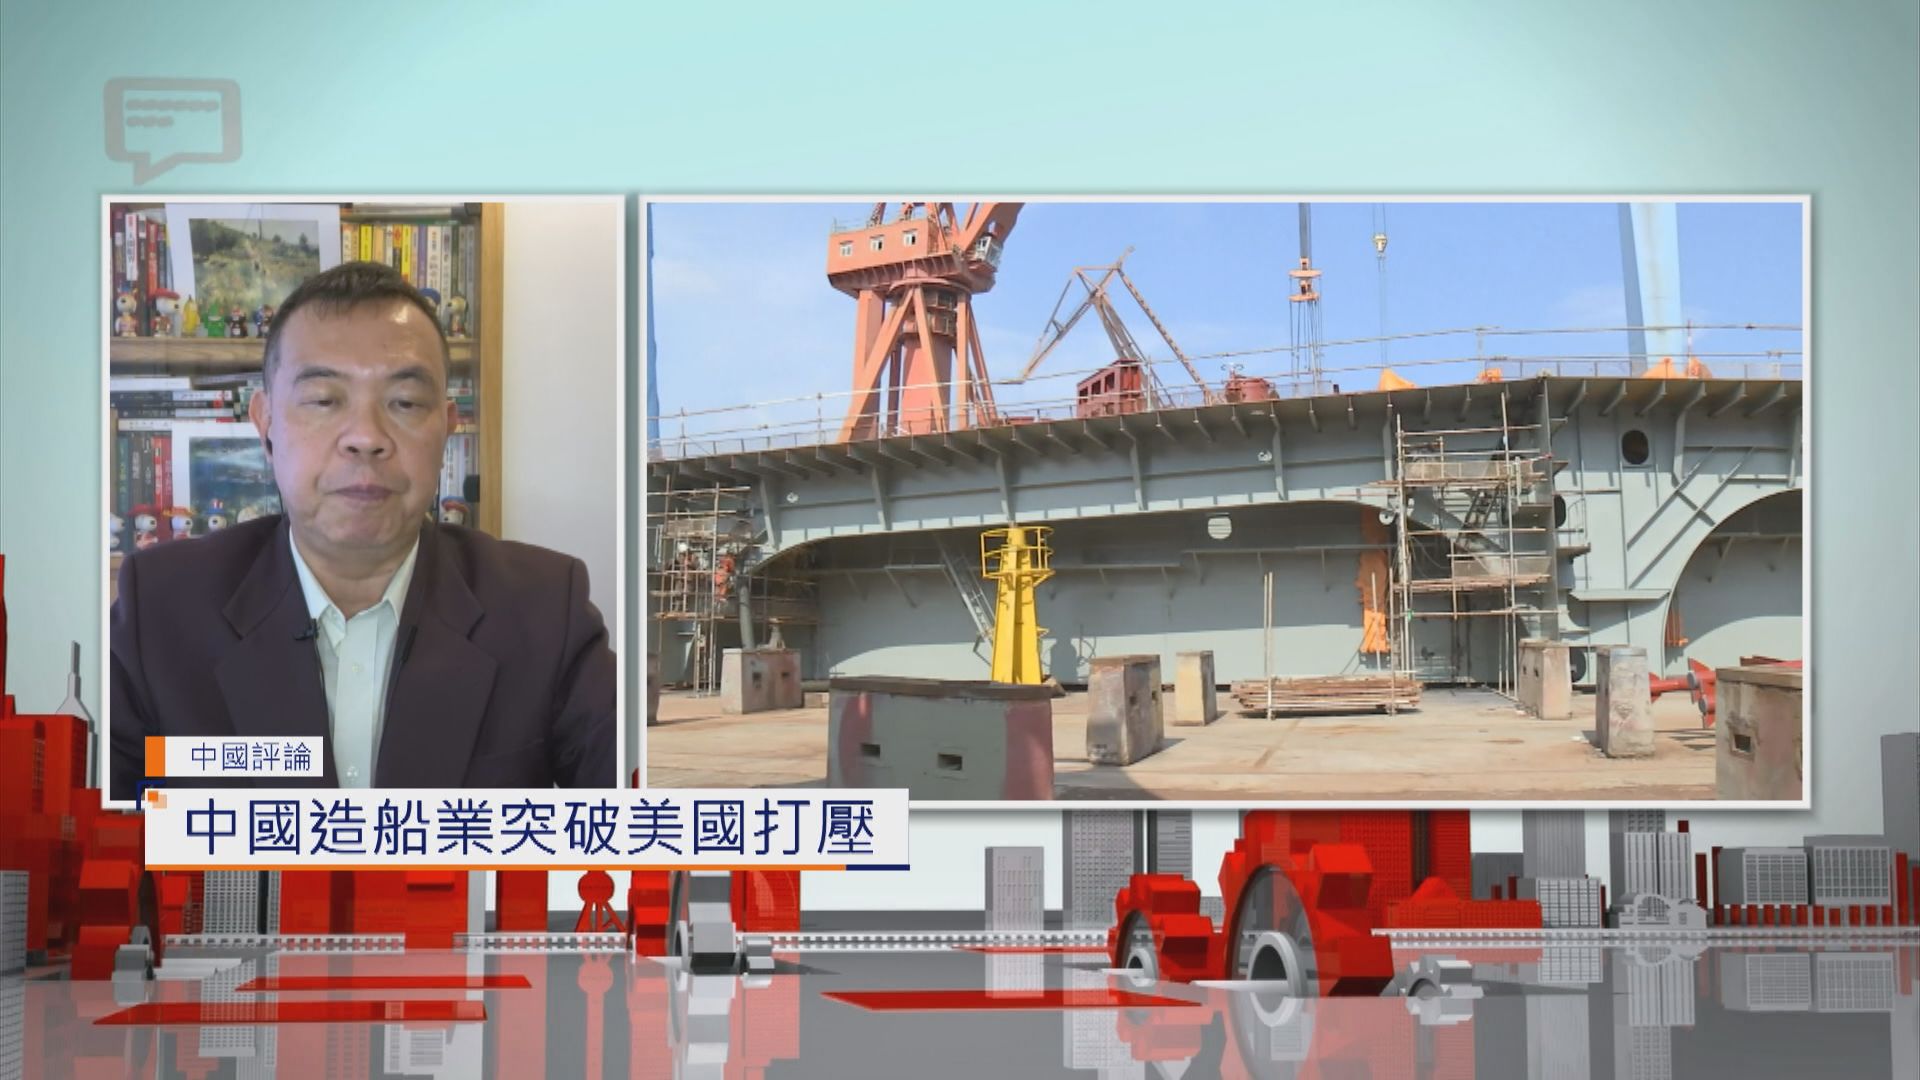 【中國評論】中國造船業突破美國打壓